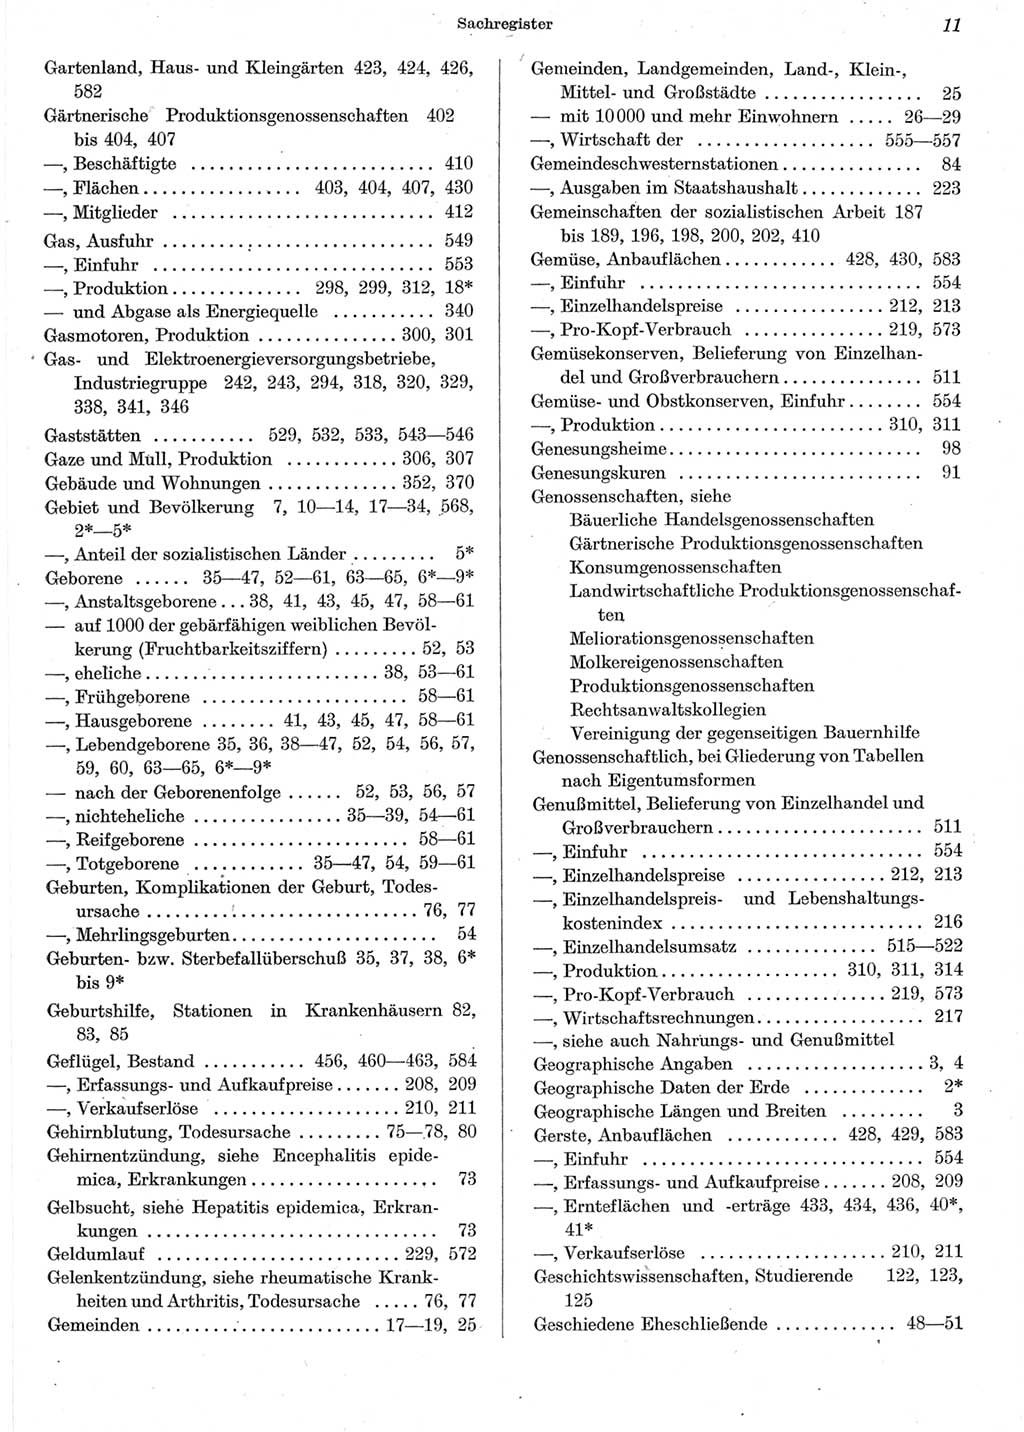 Statistisches Jahrbuch der Deutschen Demokratischen Republik (DDR) 1962, Seite 11 (Stat. Jb. DDR 1962, S. 11)